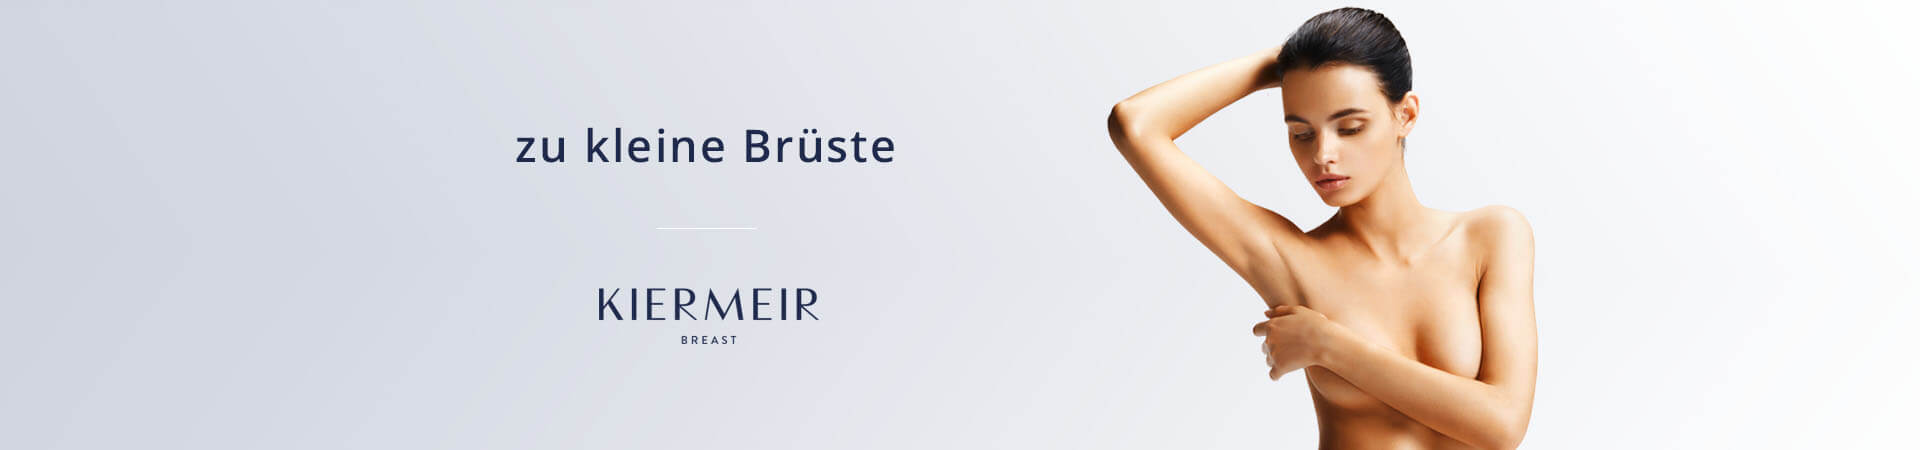 Kleine Brüste, Brustvergrößerung in Bern/Schweiz - Kiermeir Breast 